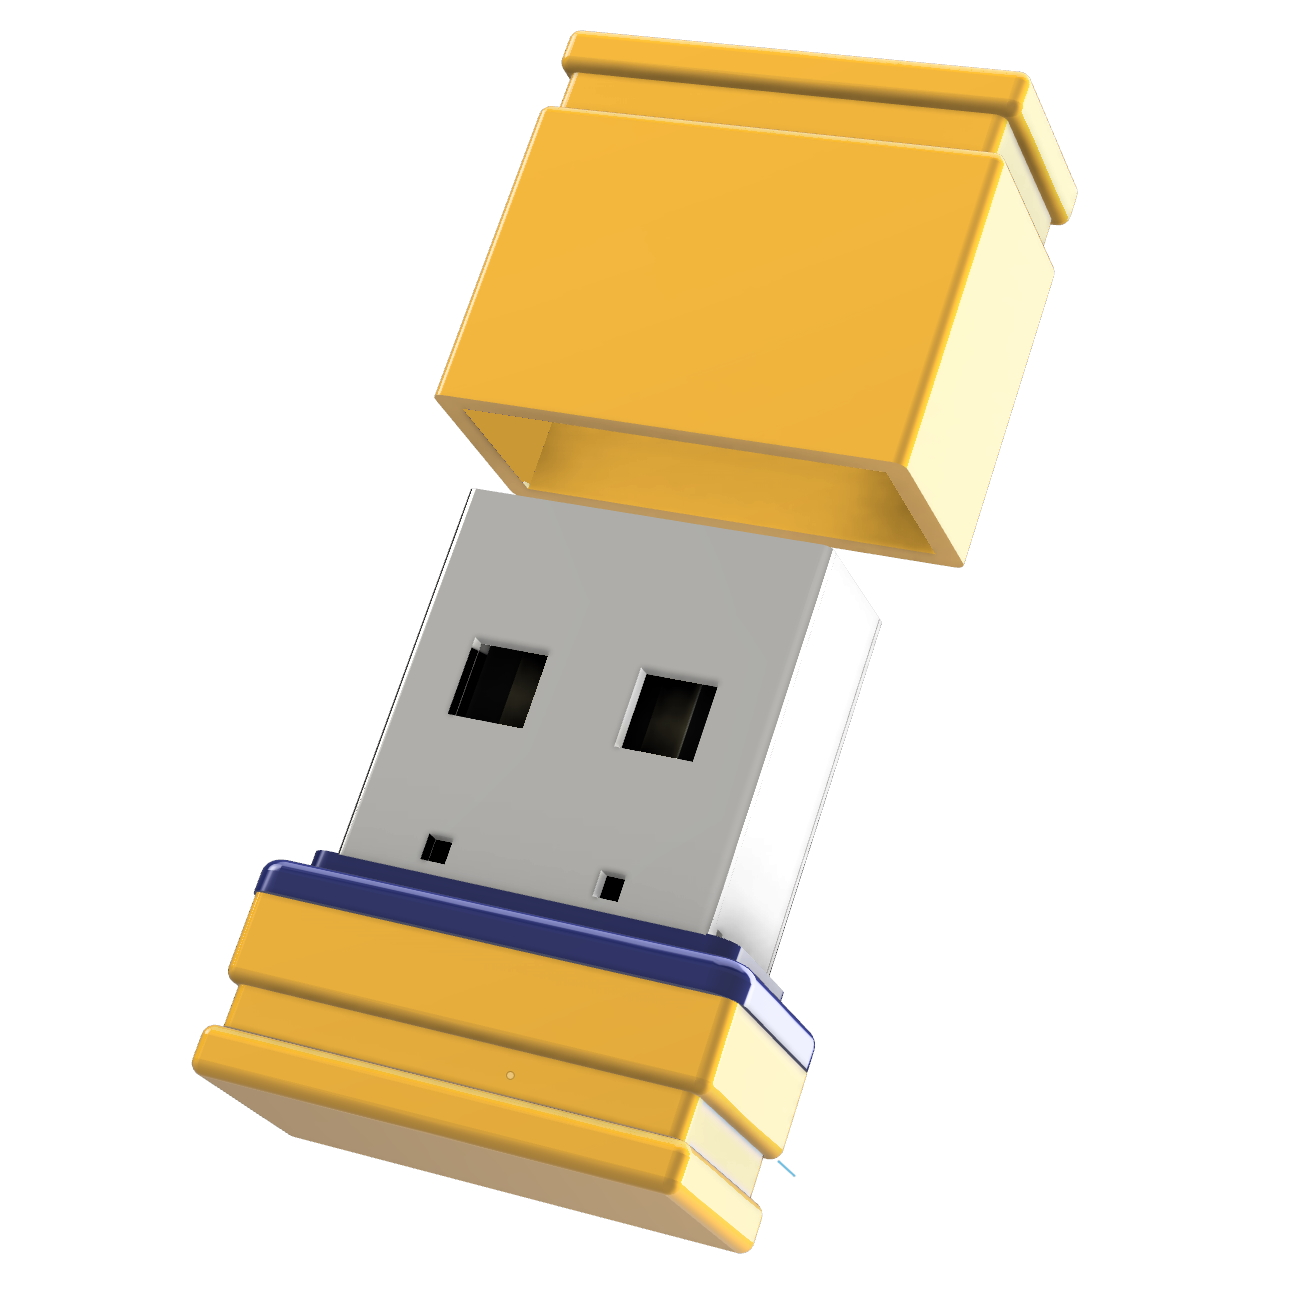 Mini GB) USB-Stick ®ULTRA GERMANY USB (Gelb/Blau, P1 64